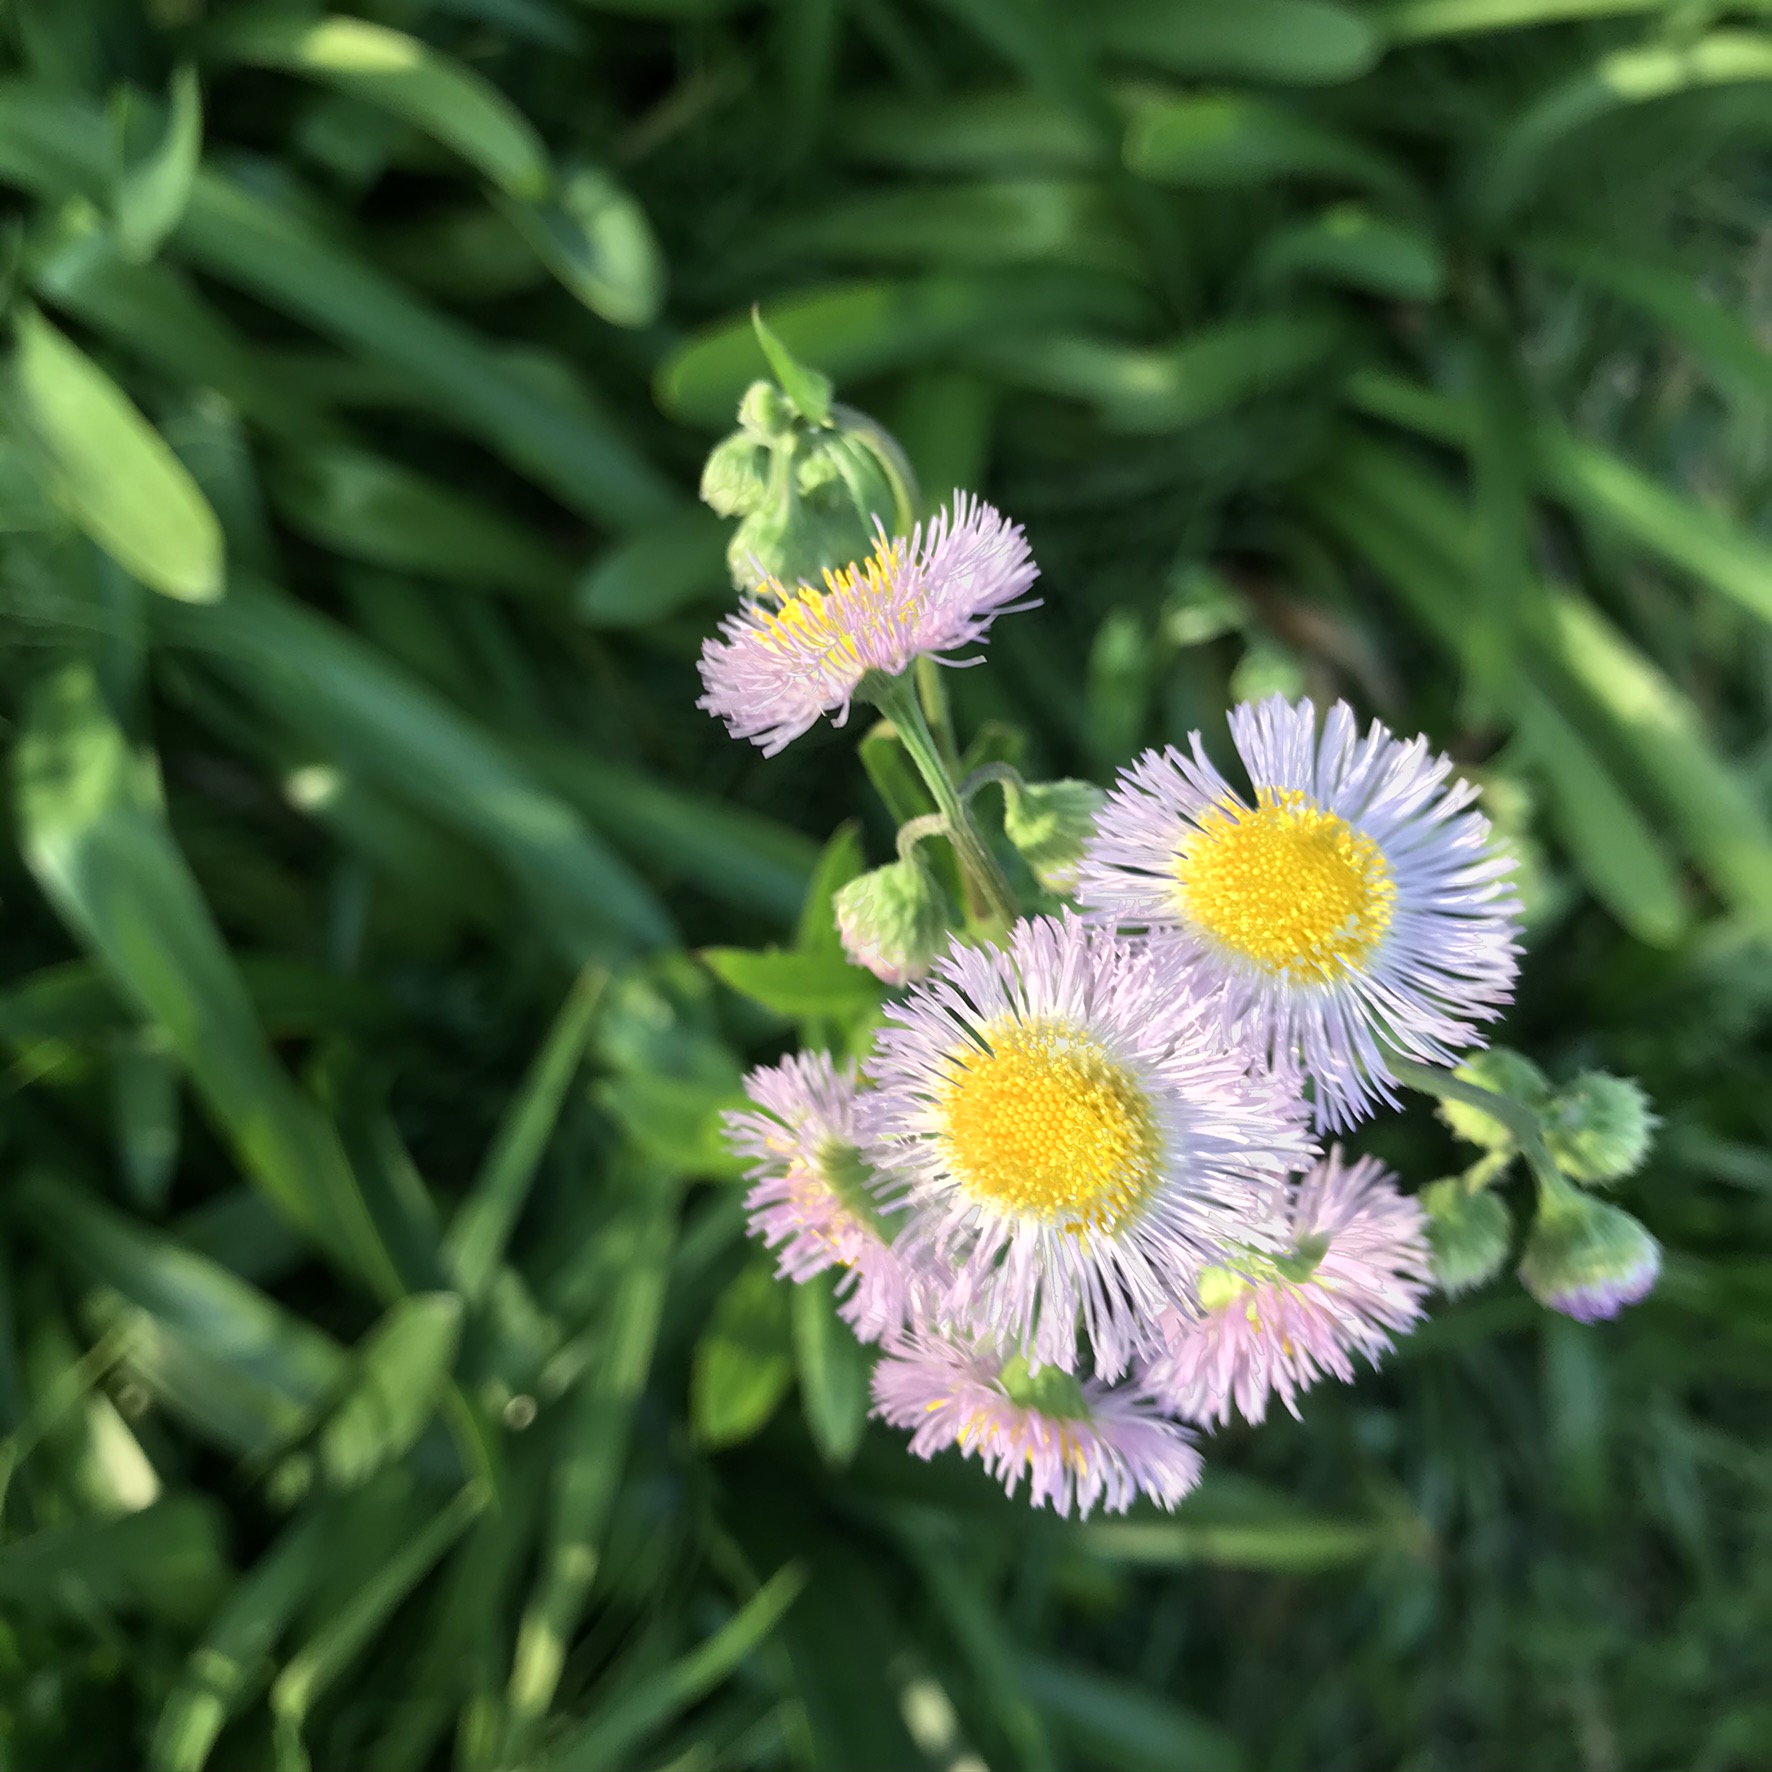 ハルジオン 春紫苑 とヒメジョオン 姫女苑 の違いを簡単に見分ける方法 鏡花水月 花つむぎ